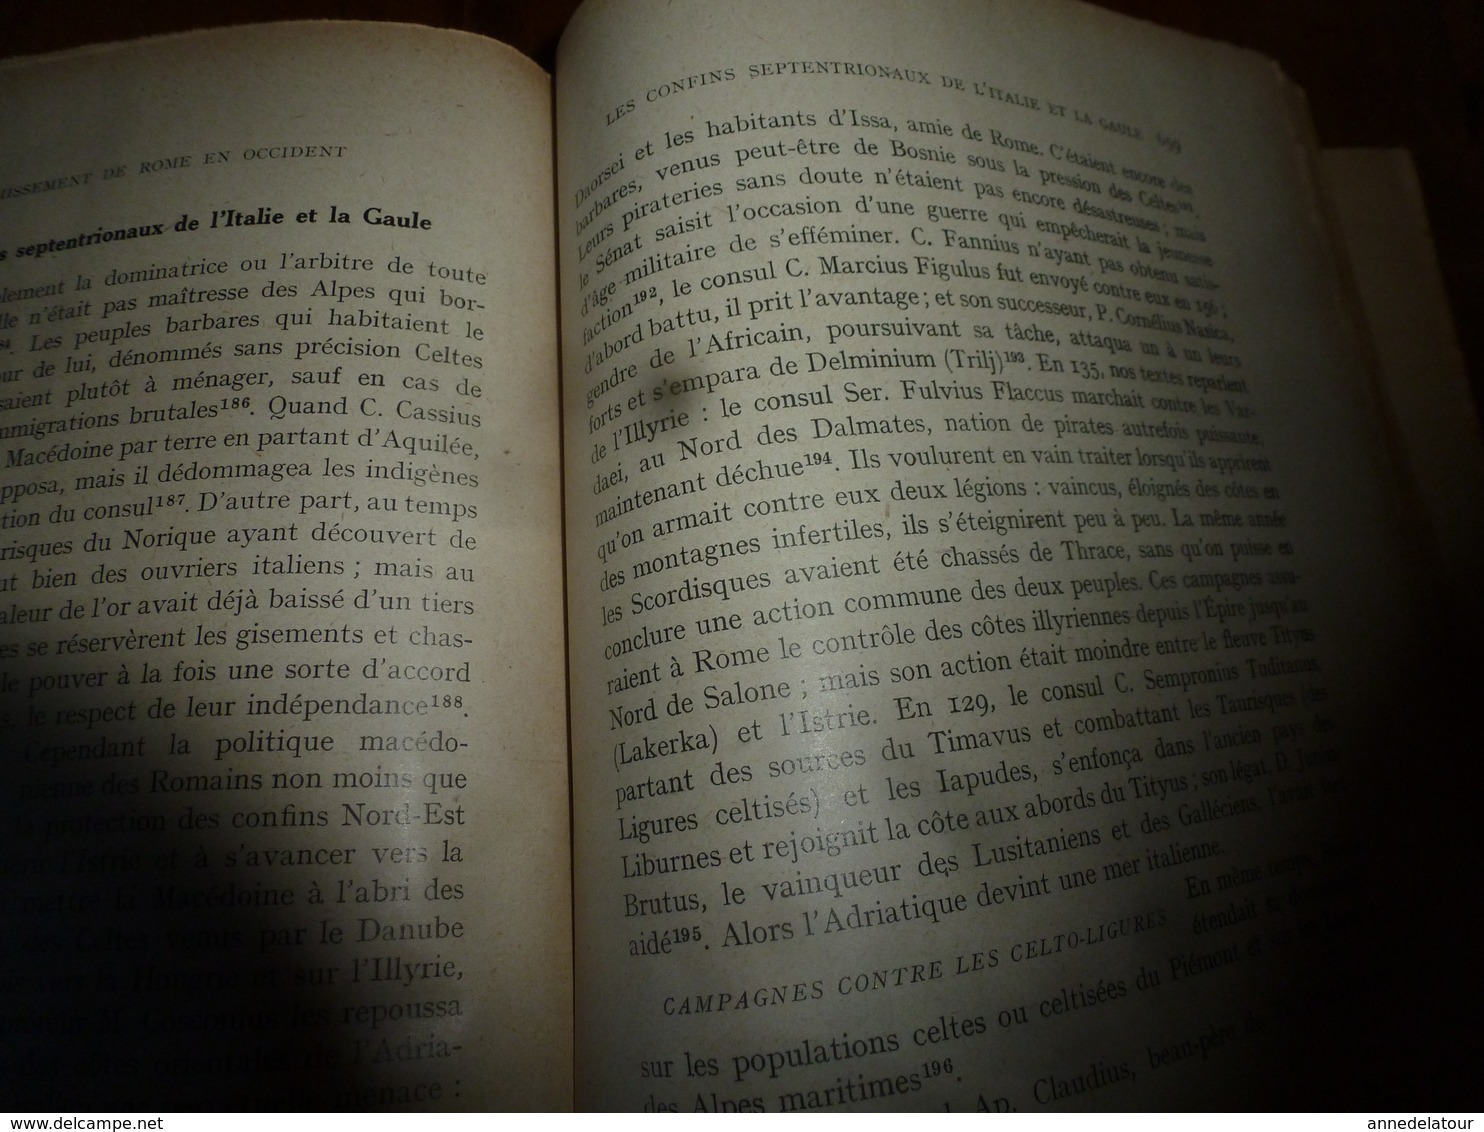 1940 HISTOIRE ANCIENNE (Romaine)  tome 1er -des origines à l'achèvement de la conquète (133 av J.C.), par Ettore Pais